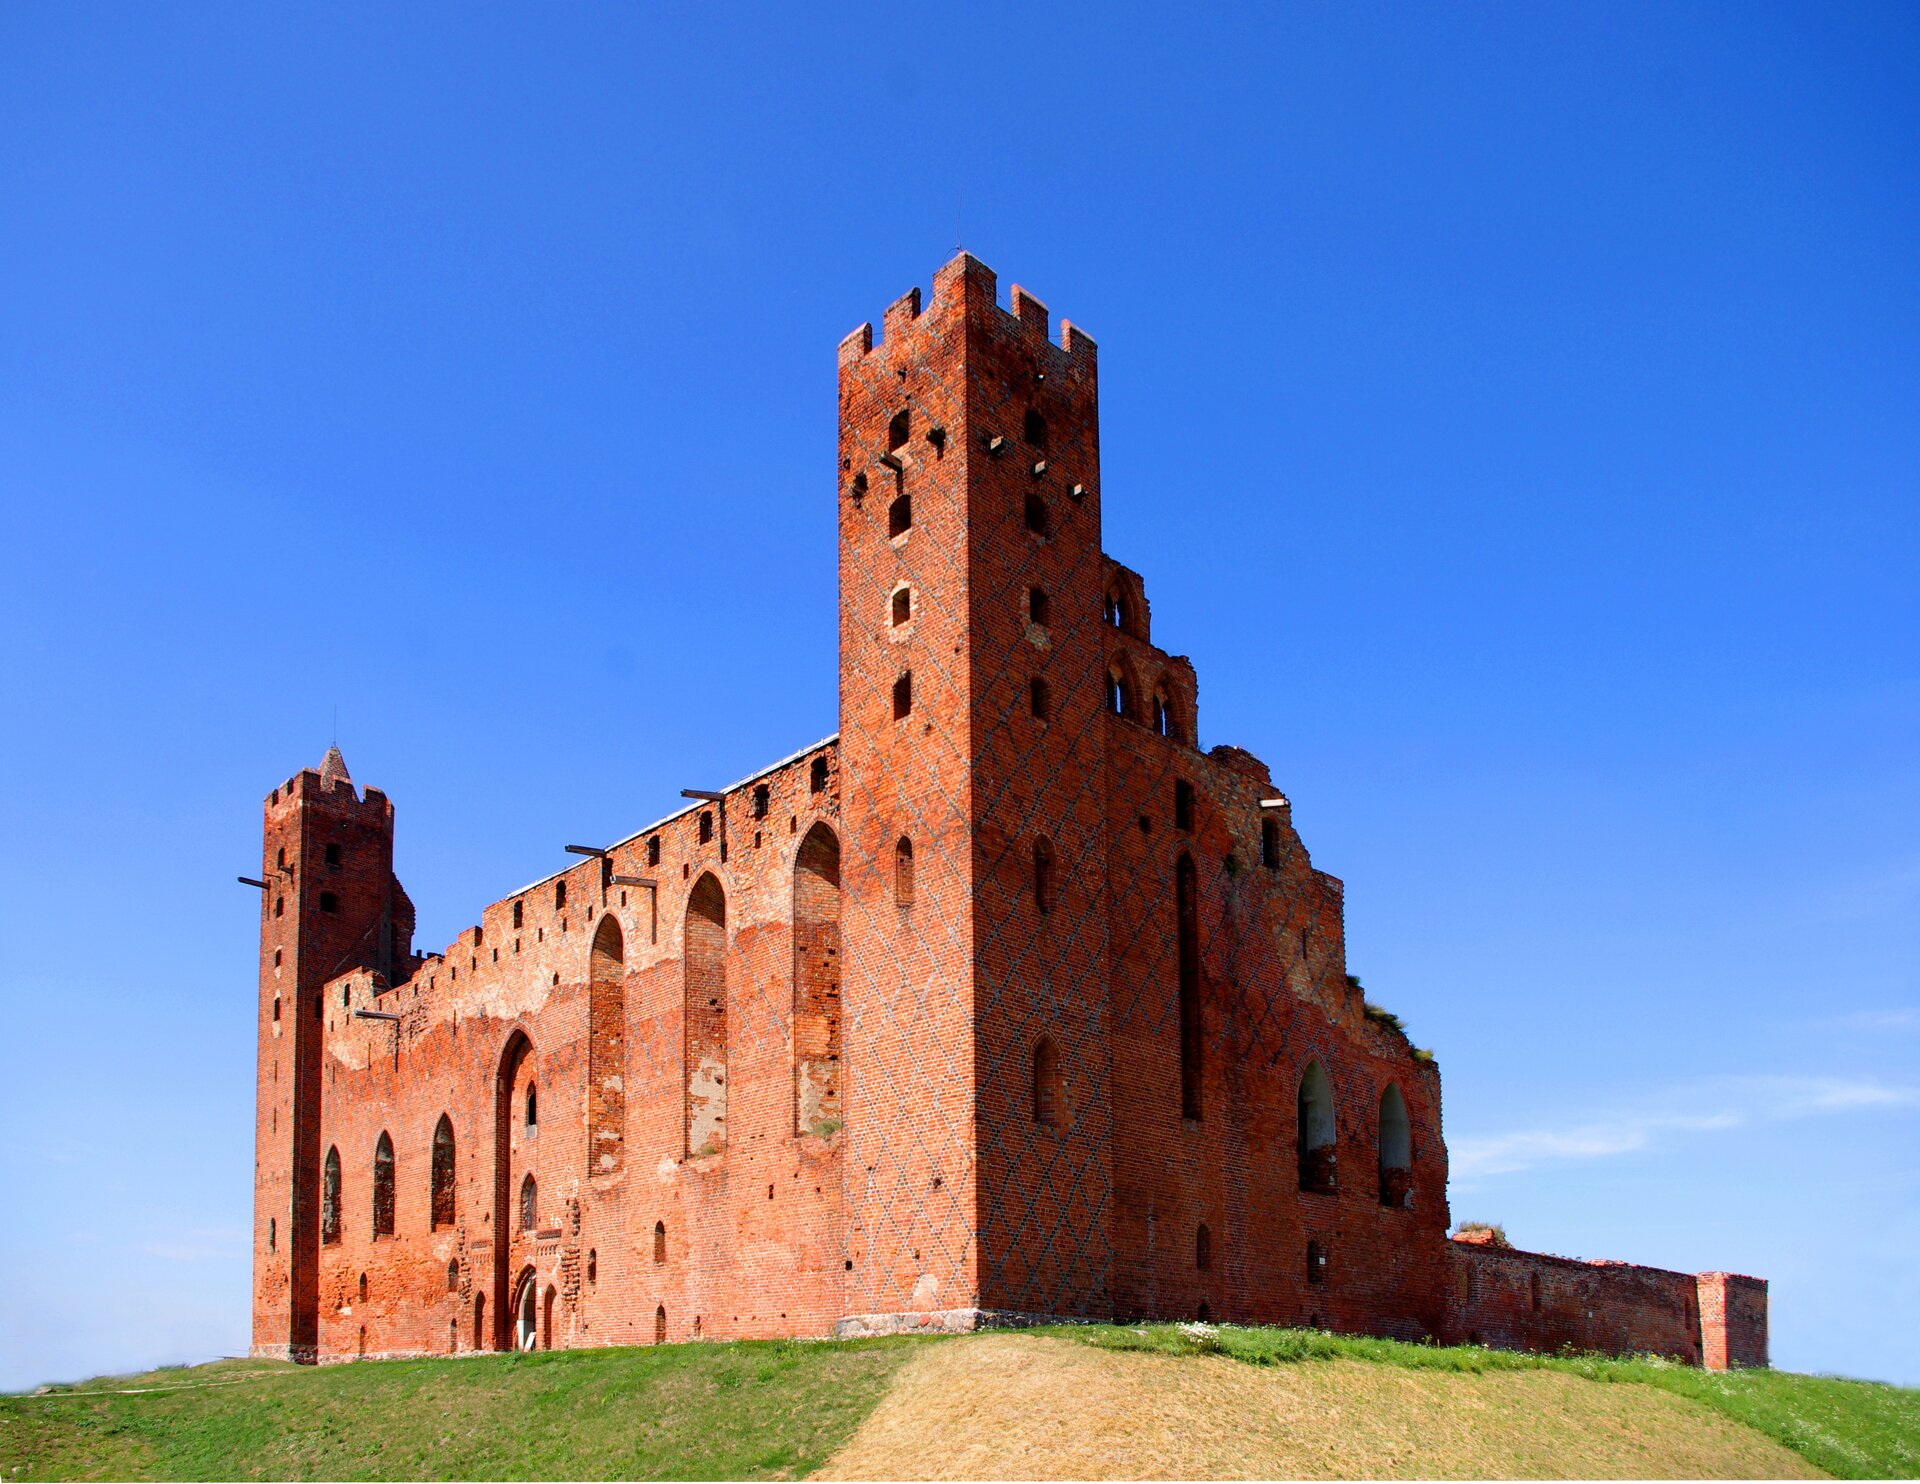 Zdjęcie przedstawia monumentalne ruiny zamku krzyżackiego na naturalnym wzniesieniu porośniętym trawą. Budowla zbudowana jest z czerwonej cegły na planie kwadratu z czworobocznymi wieżami w dwóch rogach zamku. Zdjęcie przedstawia ścianę zamku, pomiędzy wieżami, w której znajduje się brama wjazdowa. 